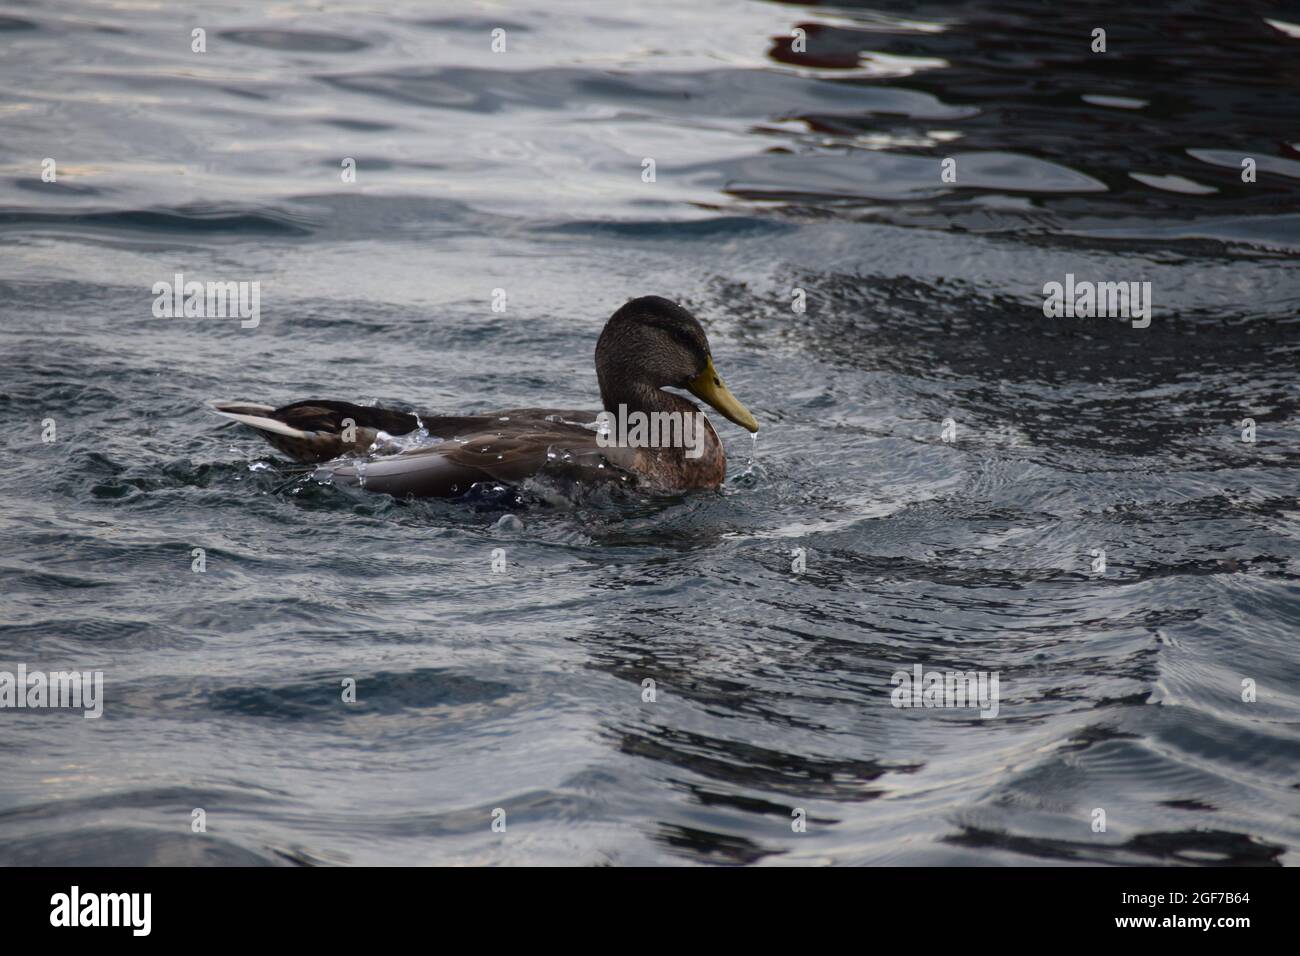 Eine Ente im flug nel lago di costanza di Überlingen am Bodensee Foto Stock